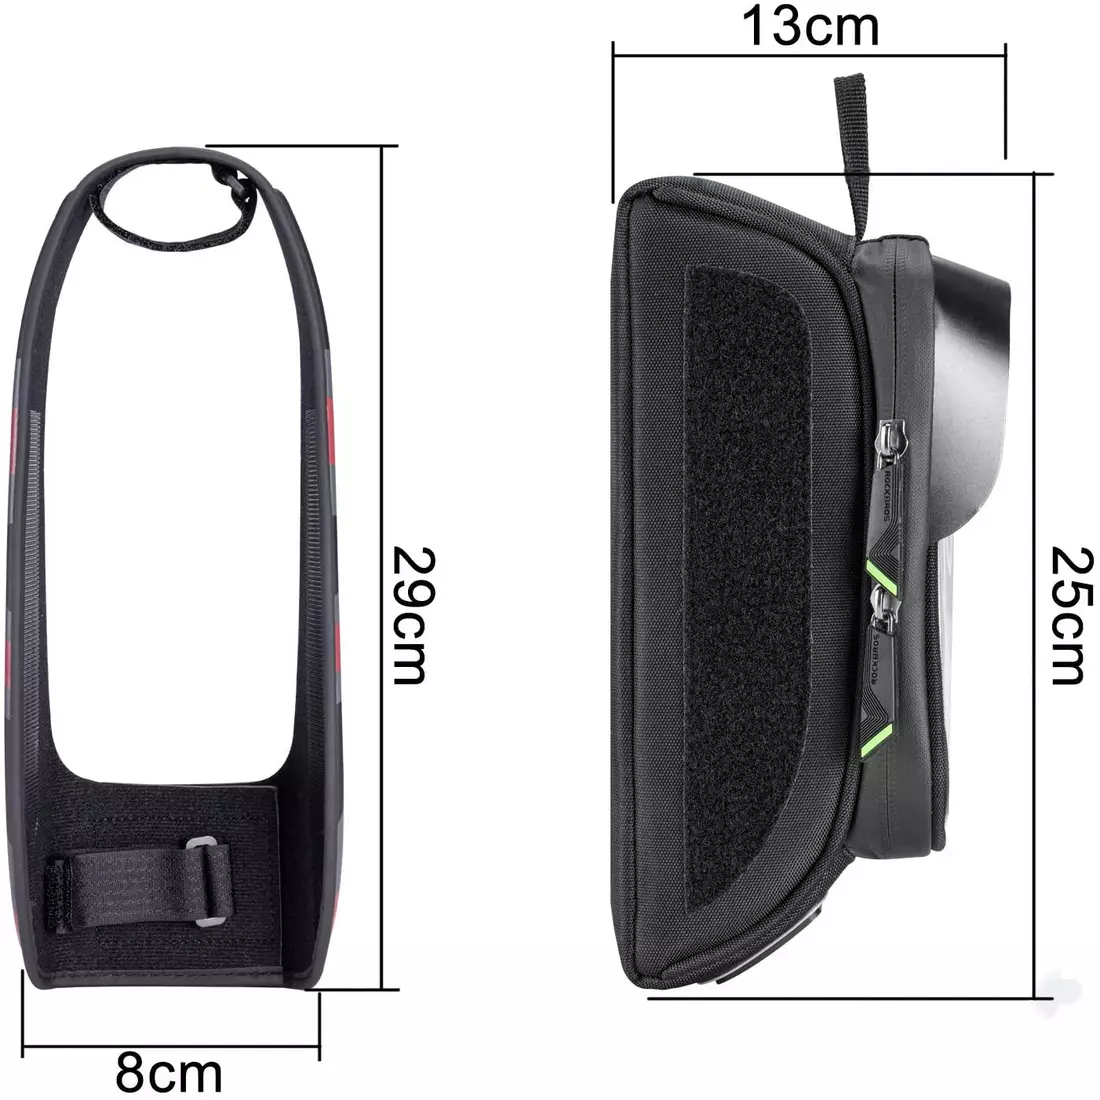 Rockbros geantă pentru telefon cu ramă, negru-gri 021-1GR